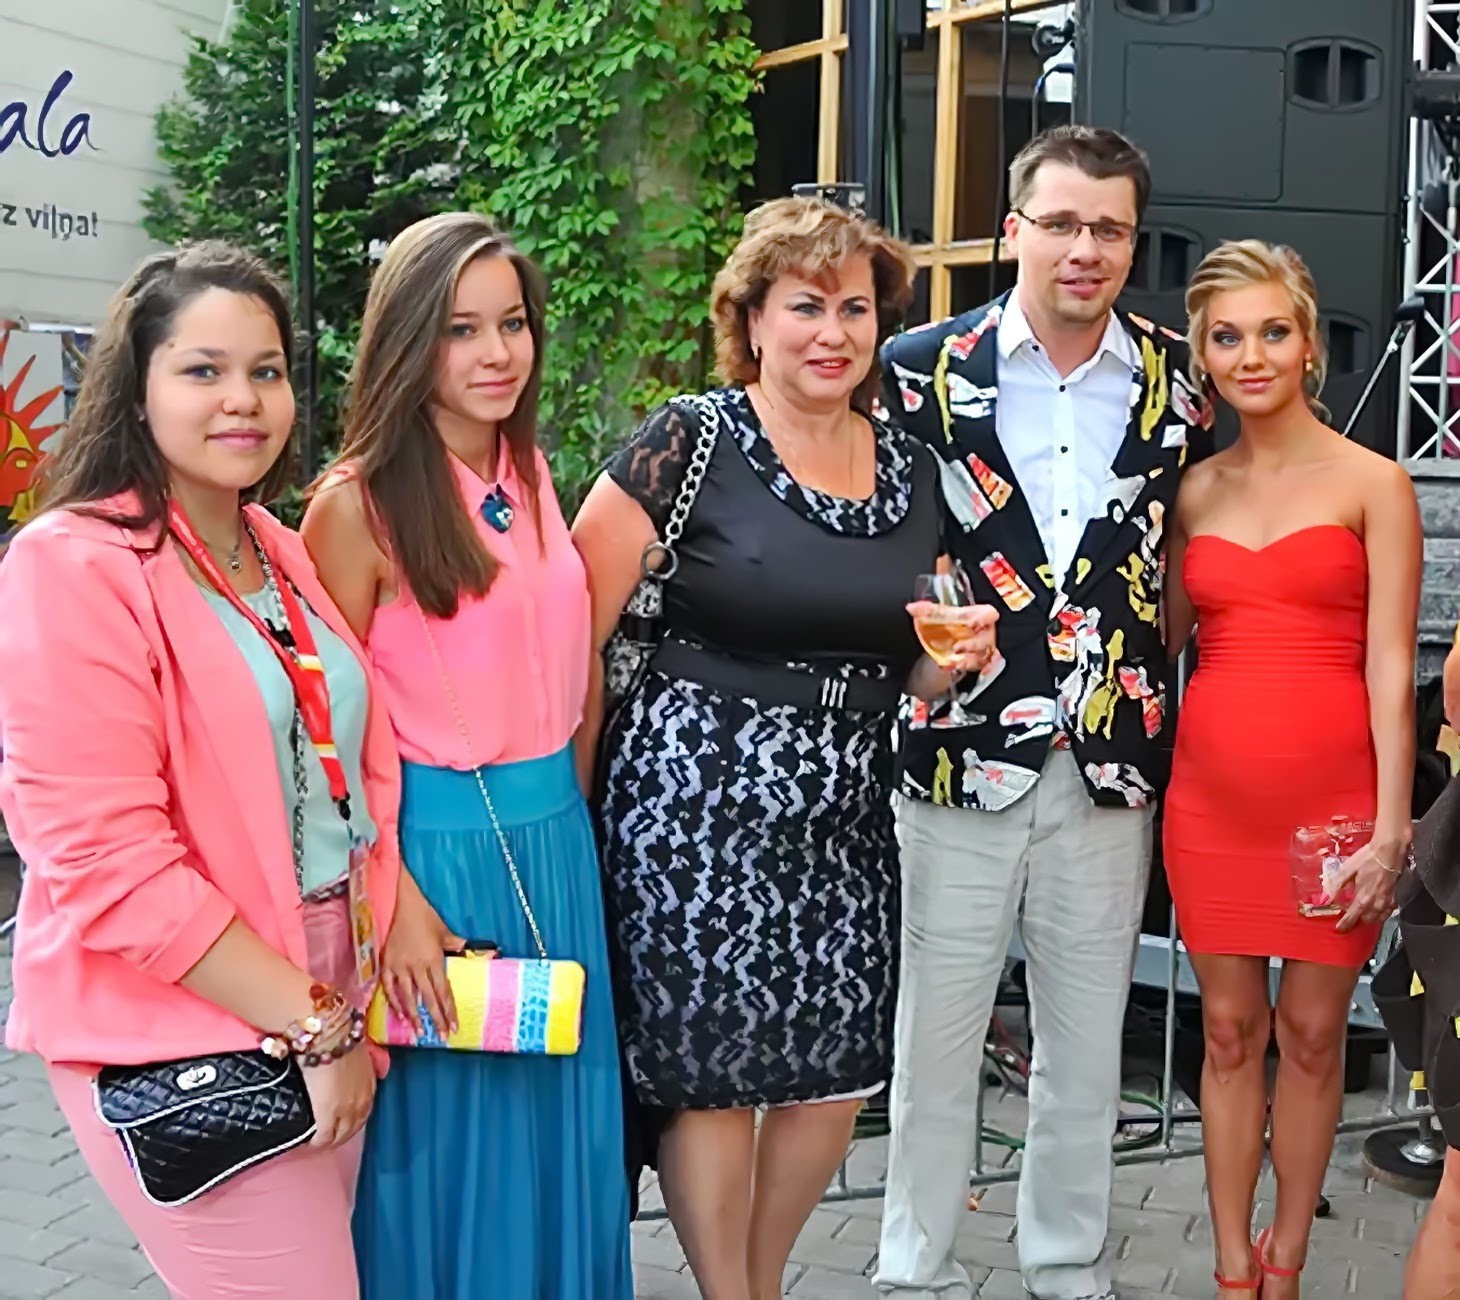 Гарик Харламов показал своих сестер-двойняшек. Подписчики восхищаются их красотой celebrities,актер,звезда,фото,шоубиz,шоубиз